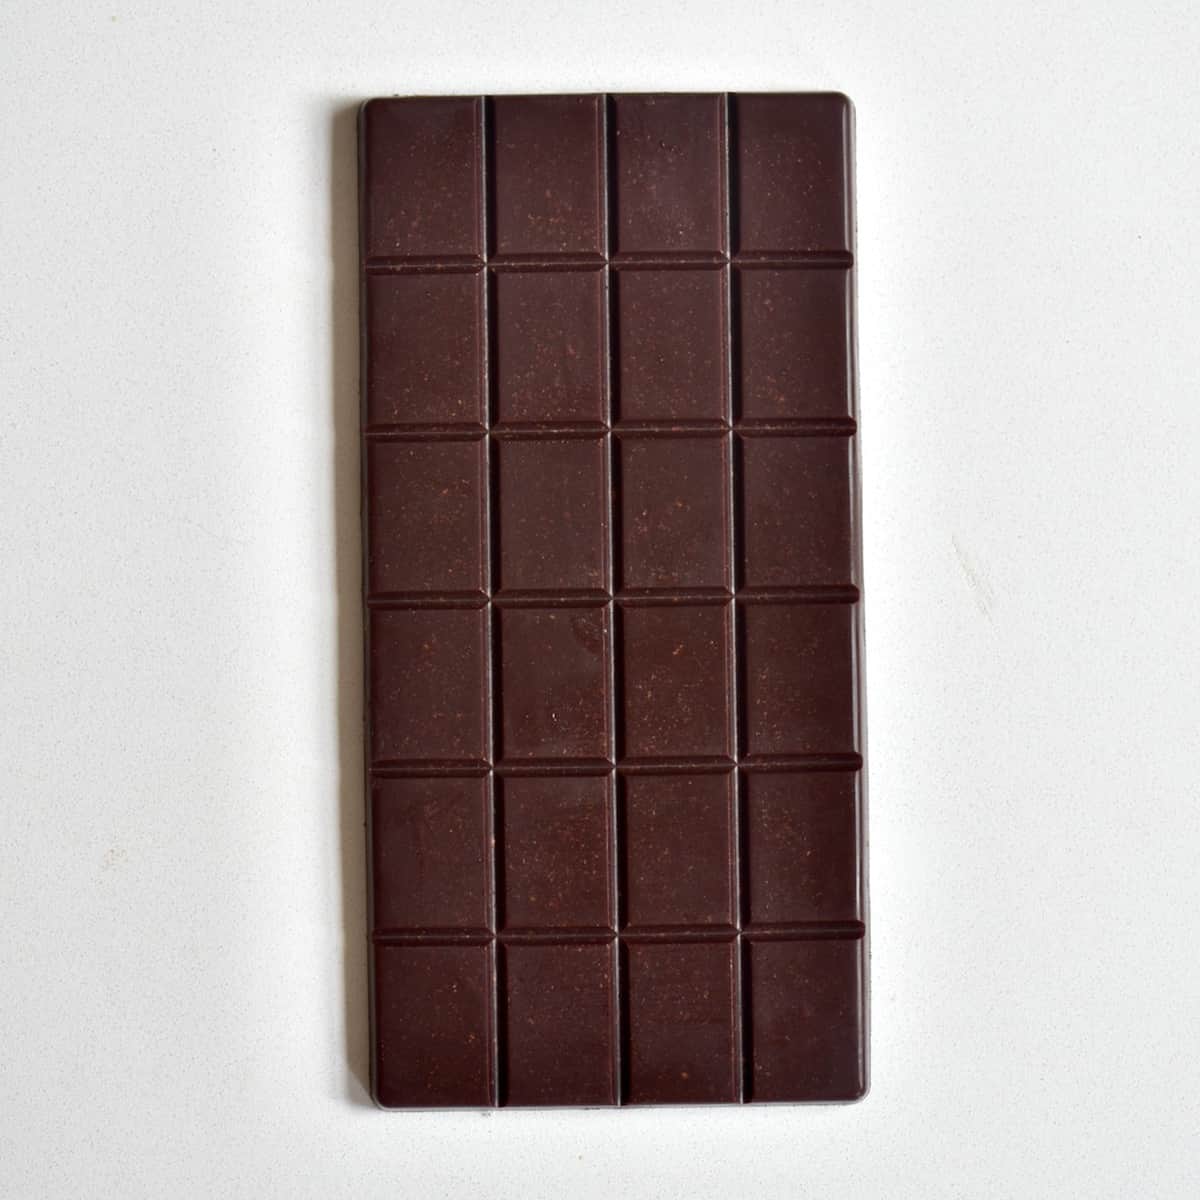 Κομμάτια κατσαρίδων σε σοκολάτες